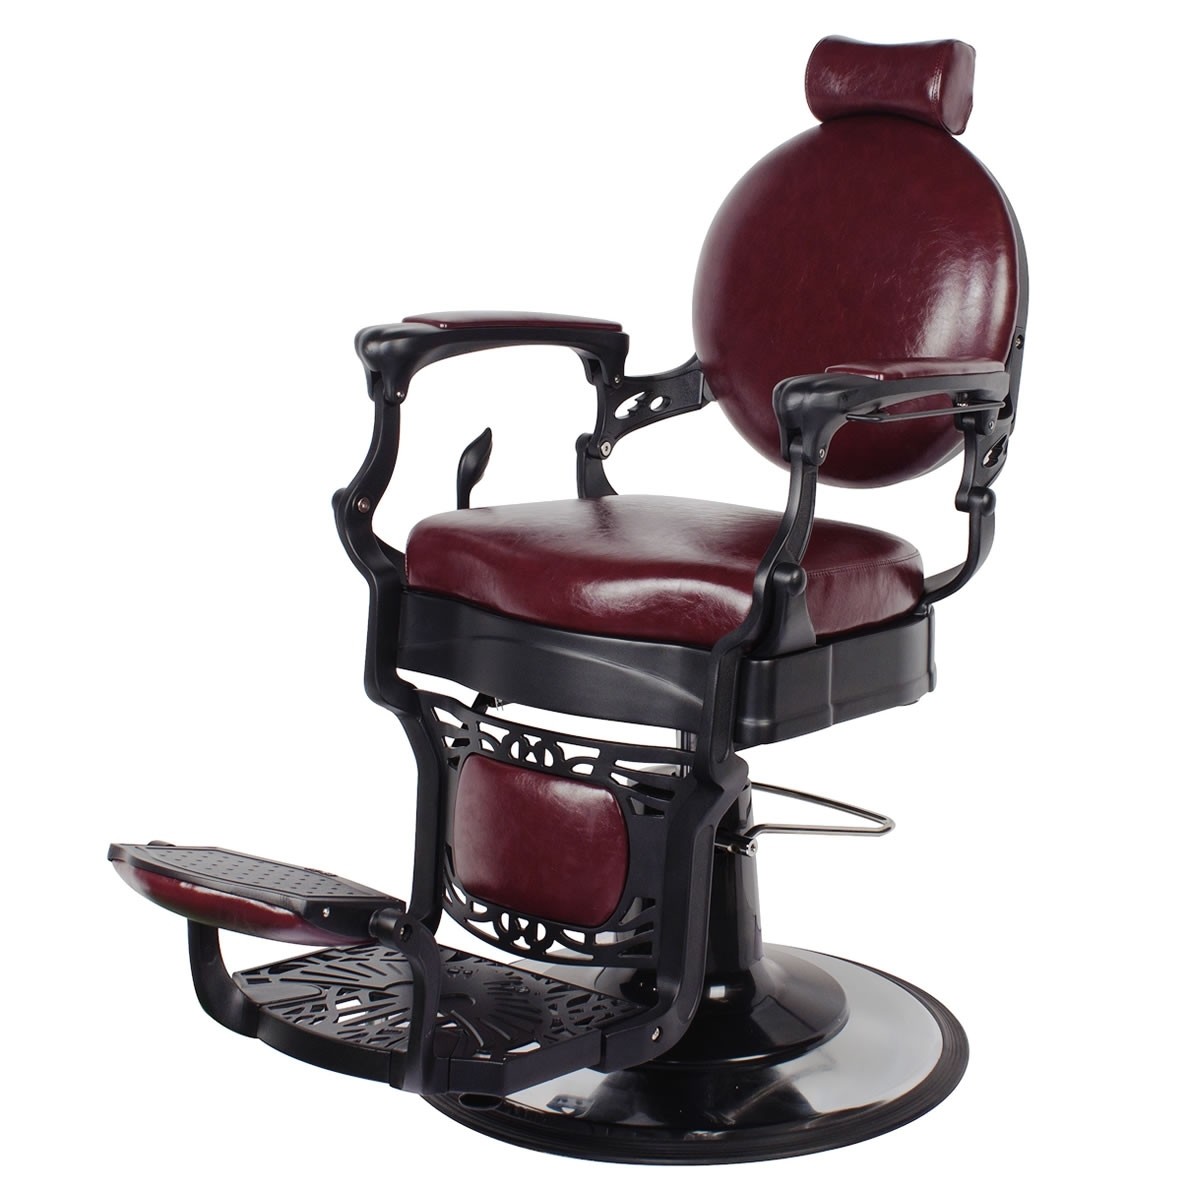 "ROMANOS" Vintage Barbershop Chair in Dark Merlot